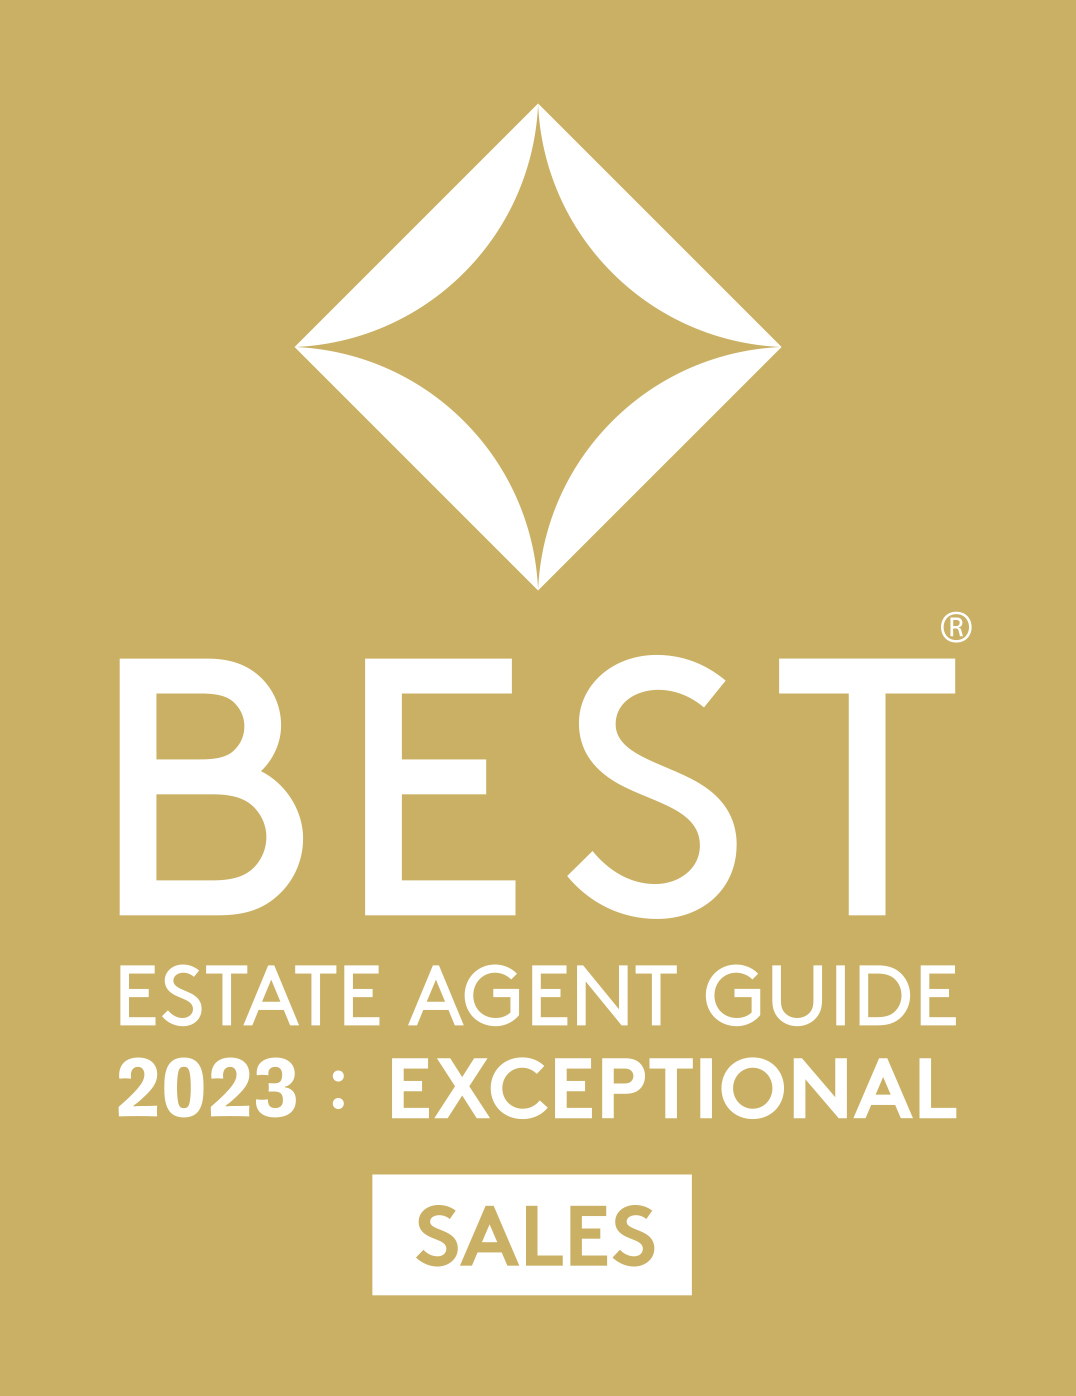 2023 Best Estate Agent Guide award winner